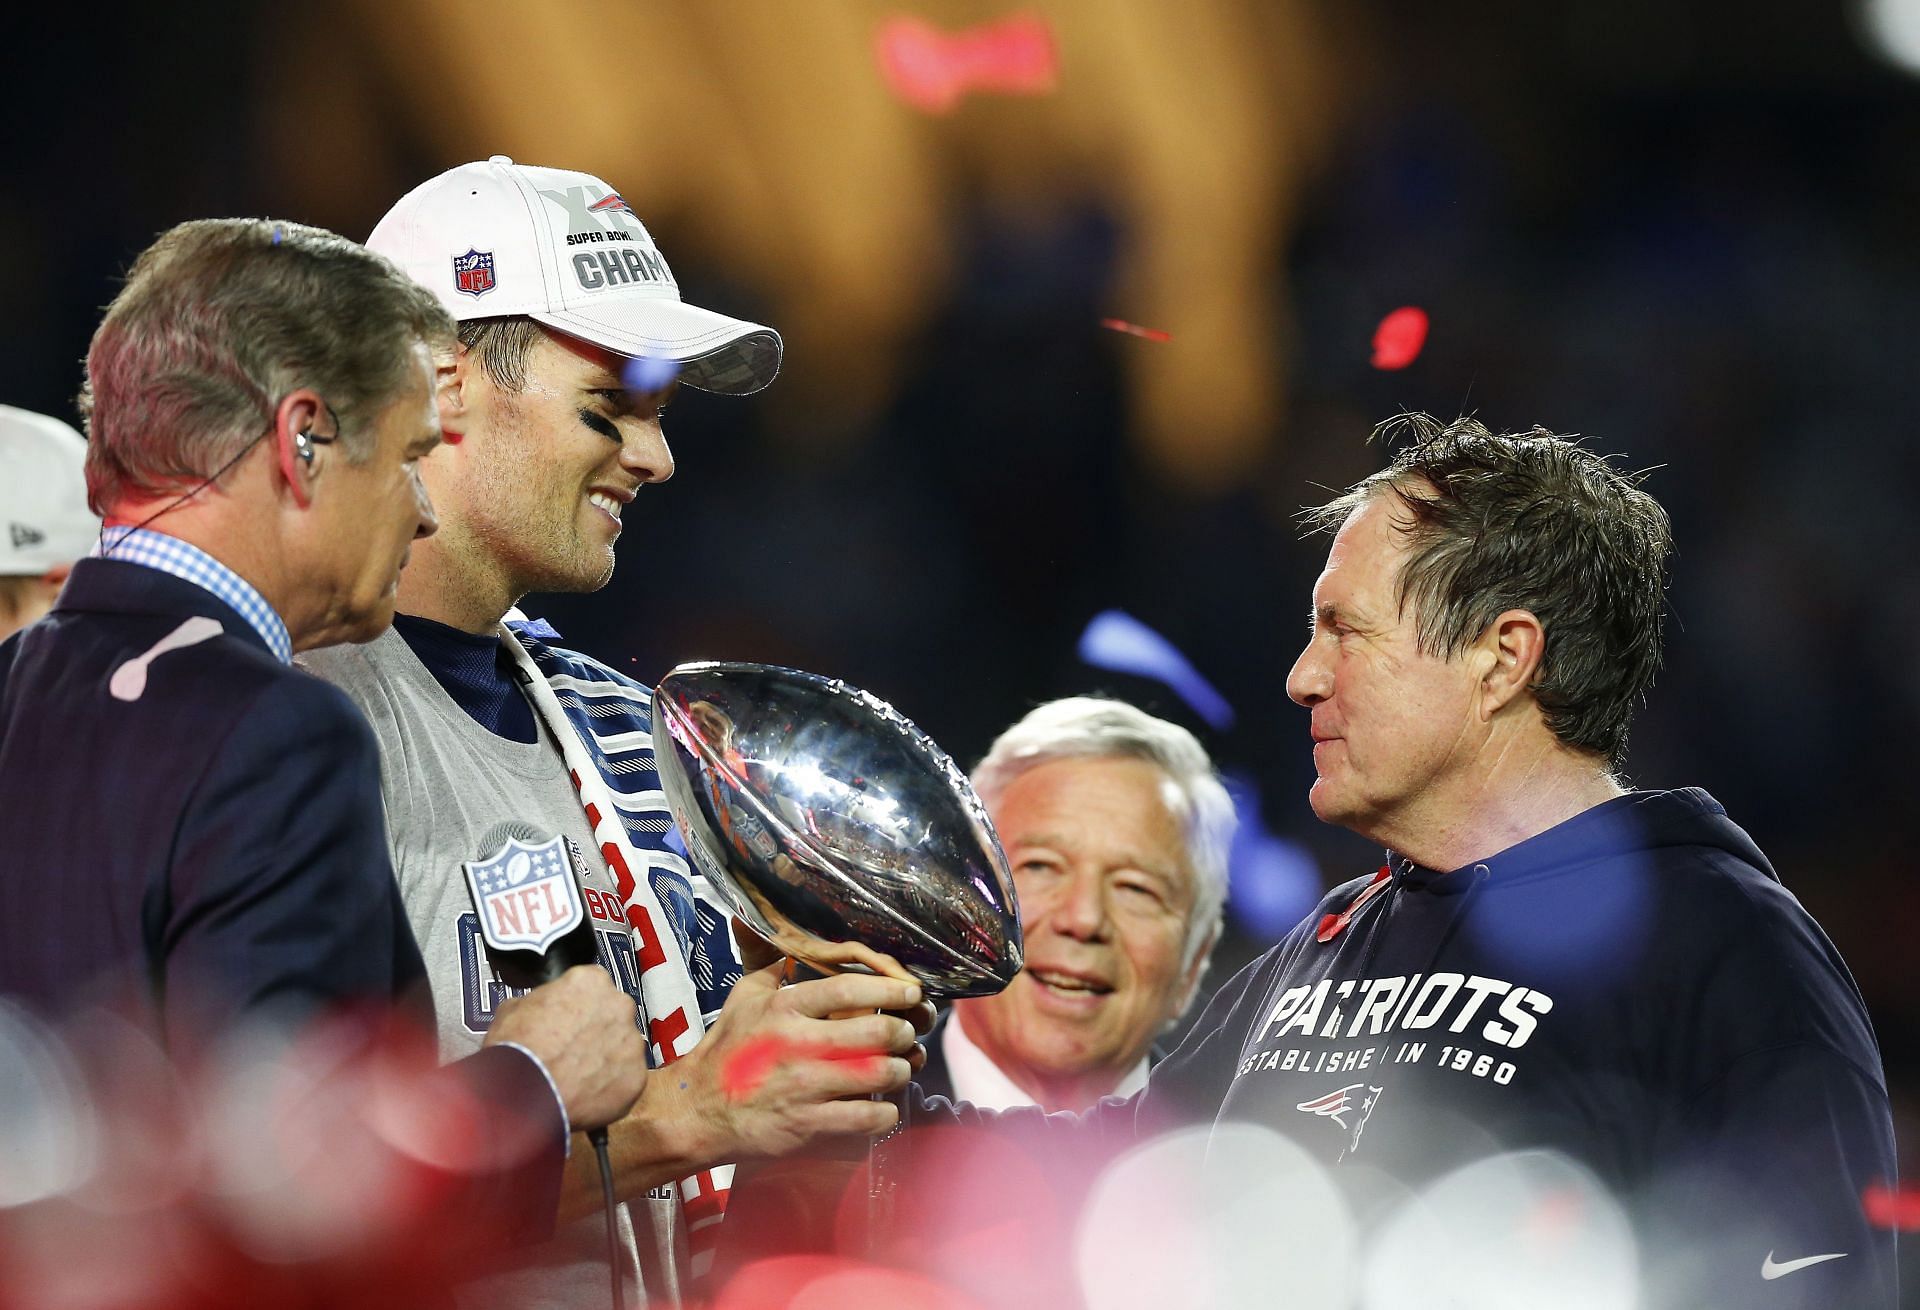 New England Patriots win Super Bowl XLIX